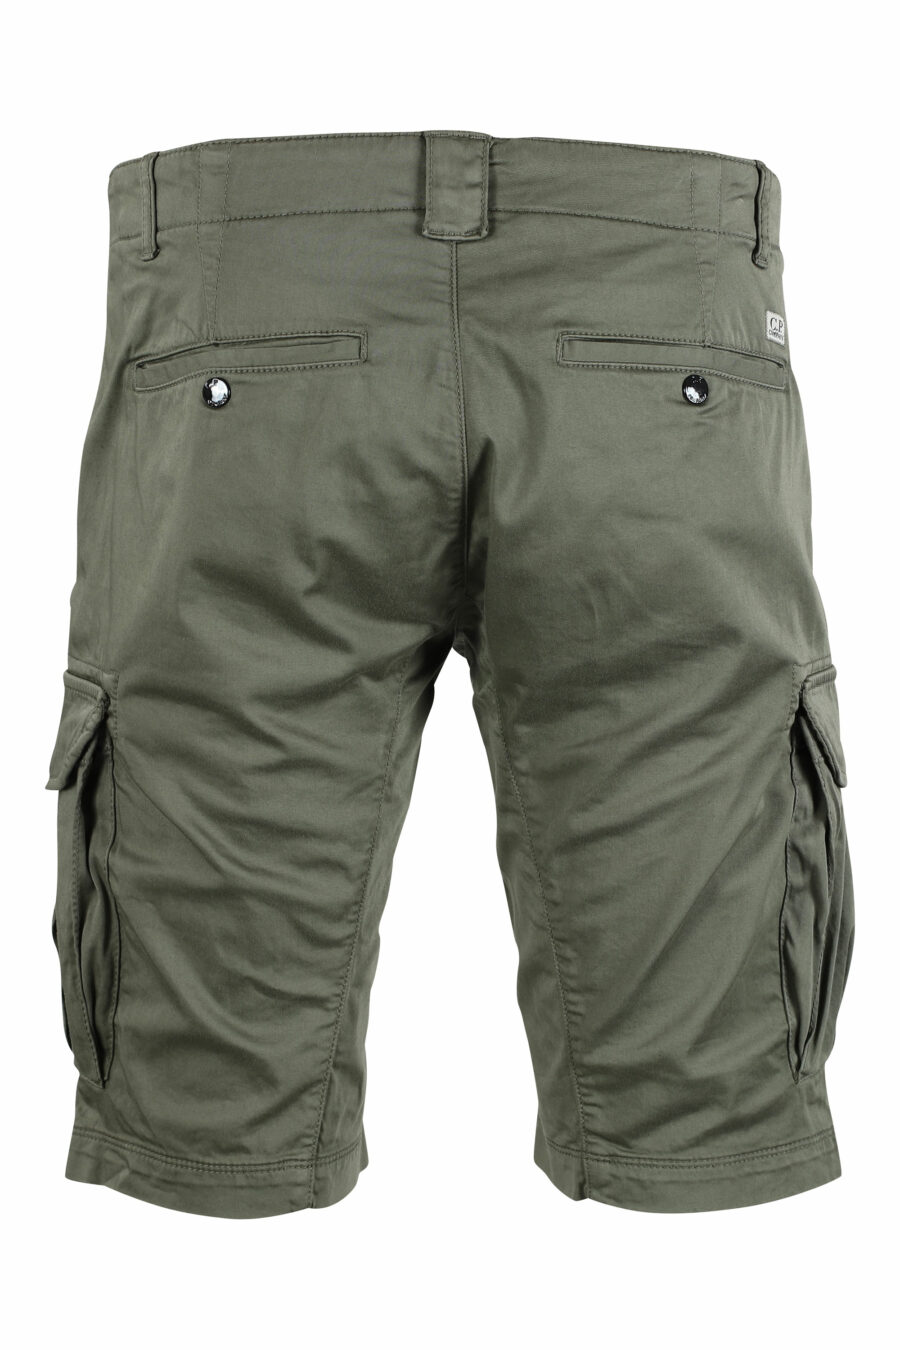 Pantalón corto verde militar estilo cargo con minilogo circular - IMG 9500